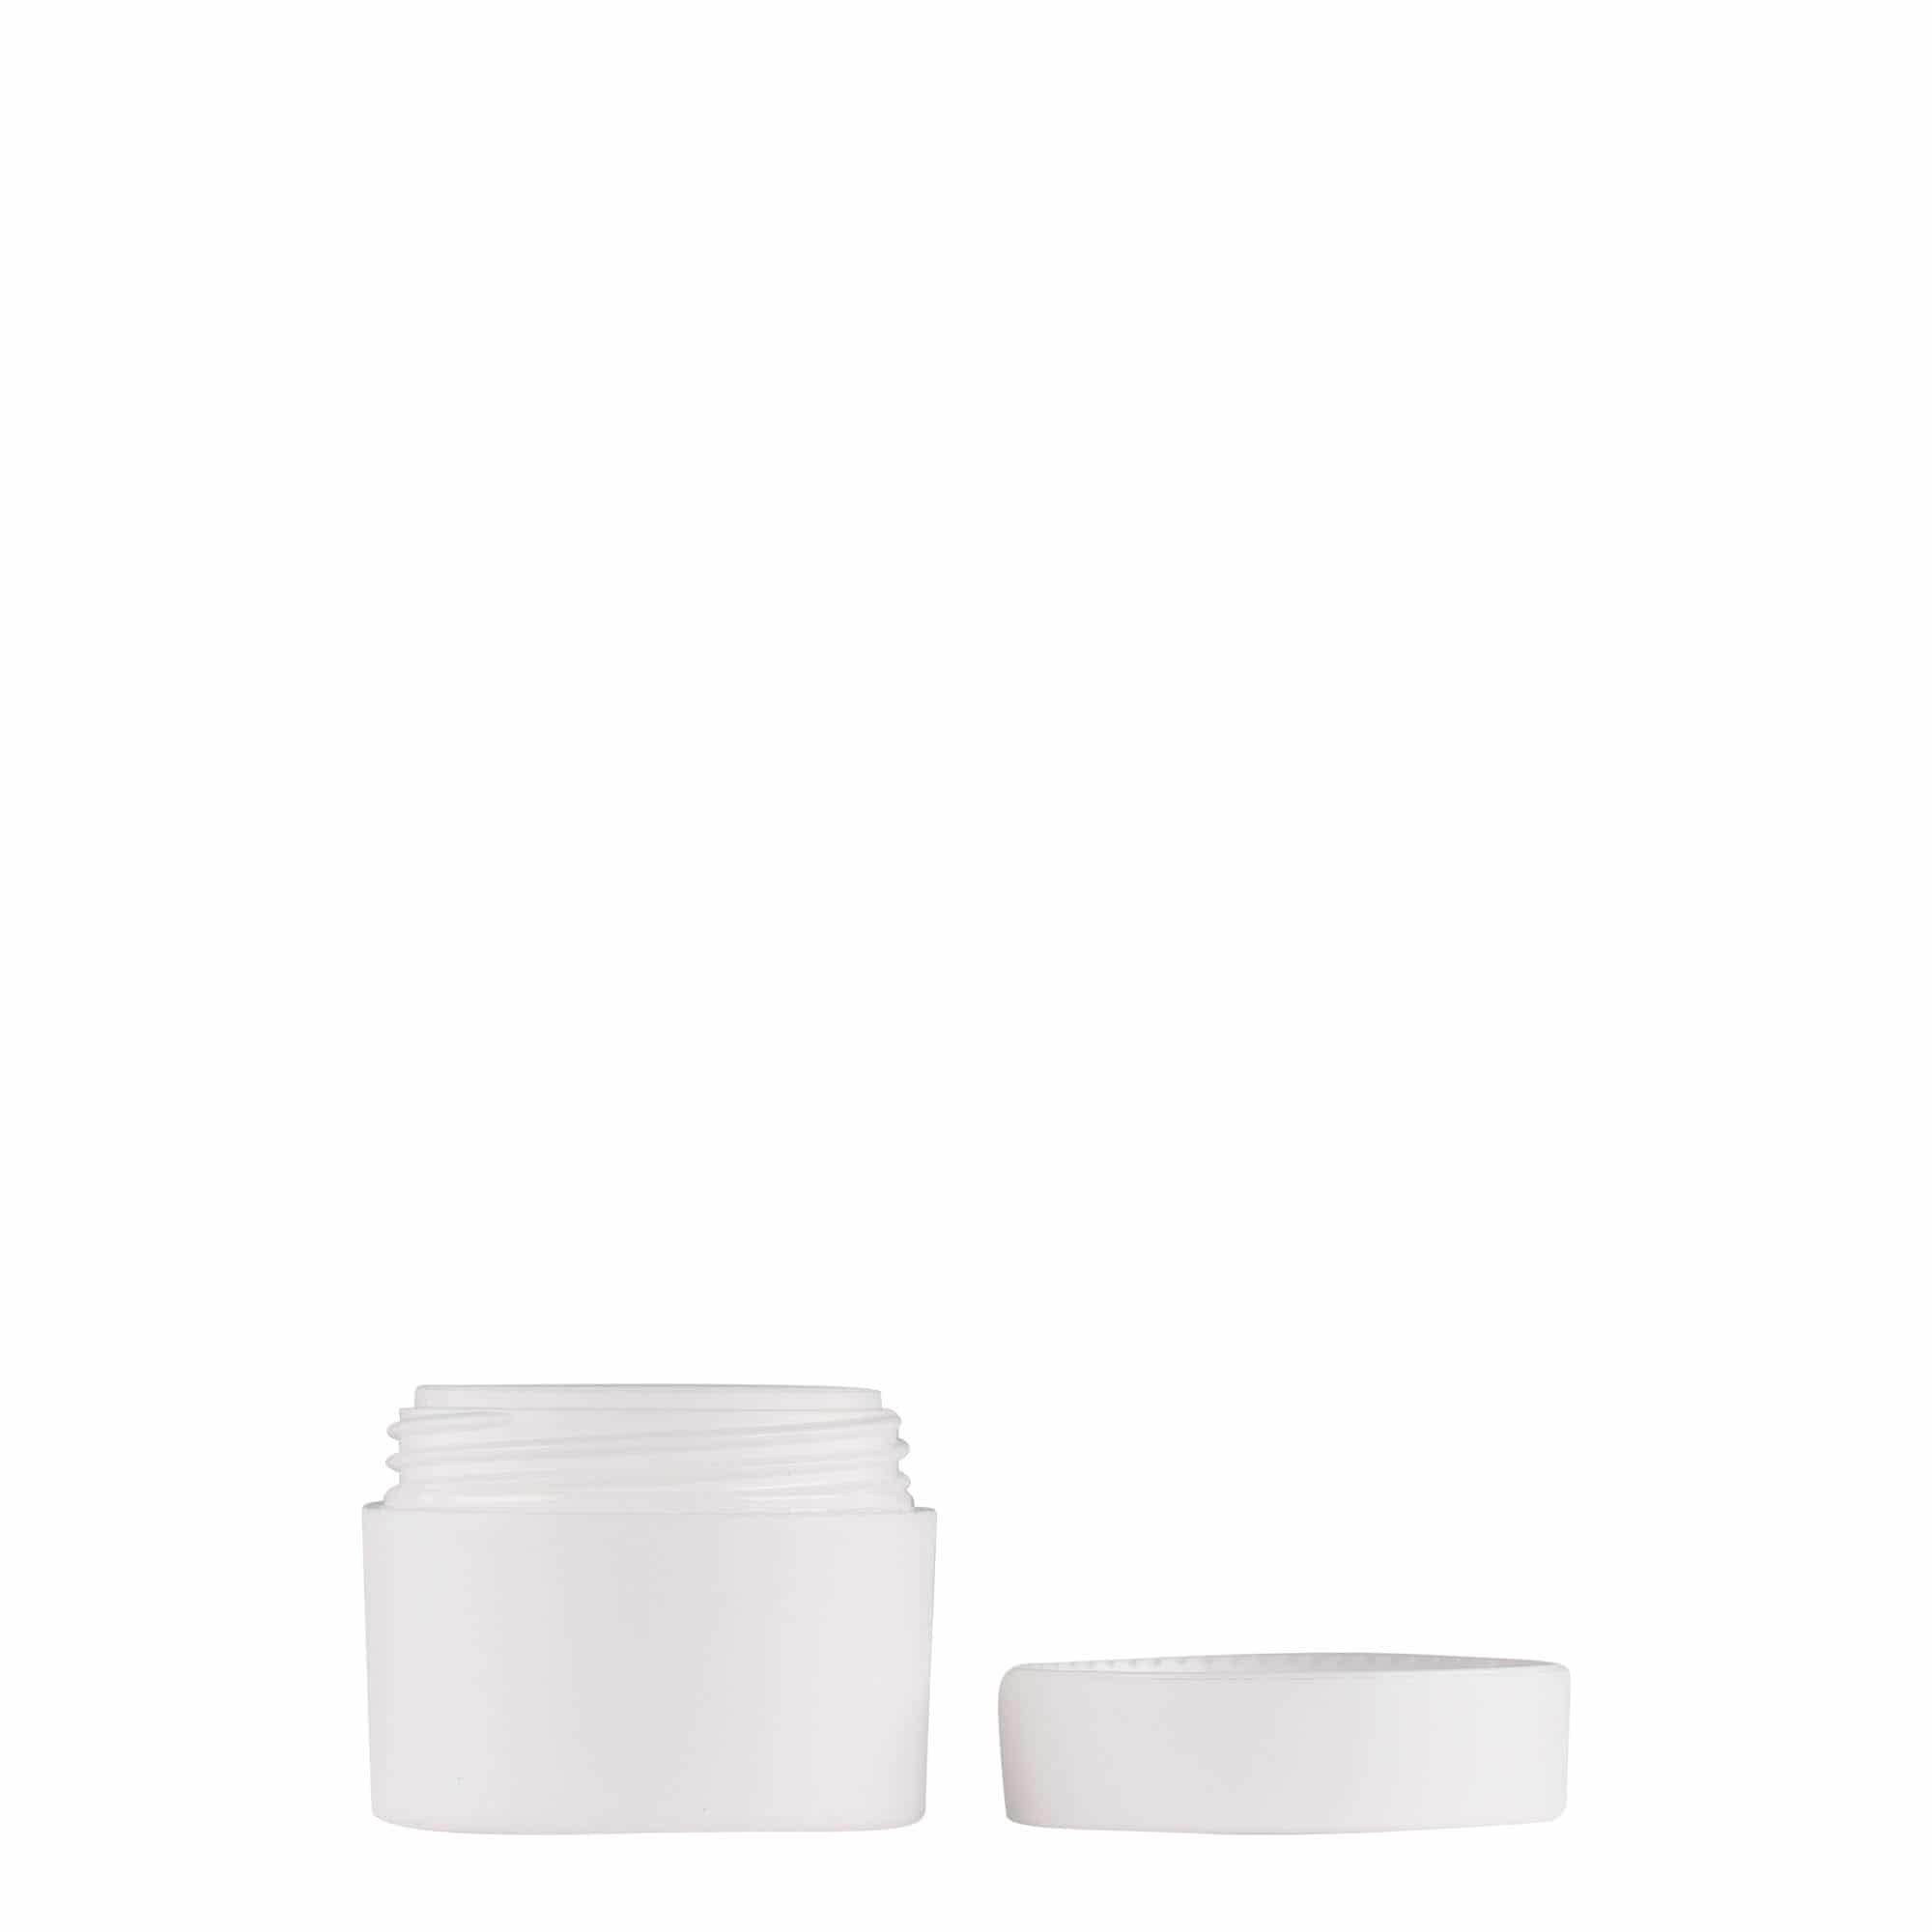 5 ml plastic jar 'Antonella', PP, white, closure: screw cap